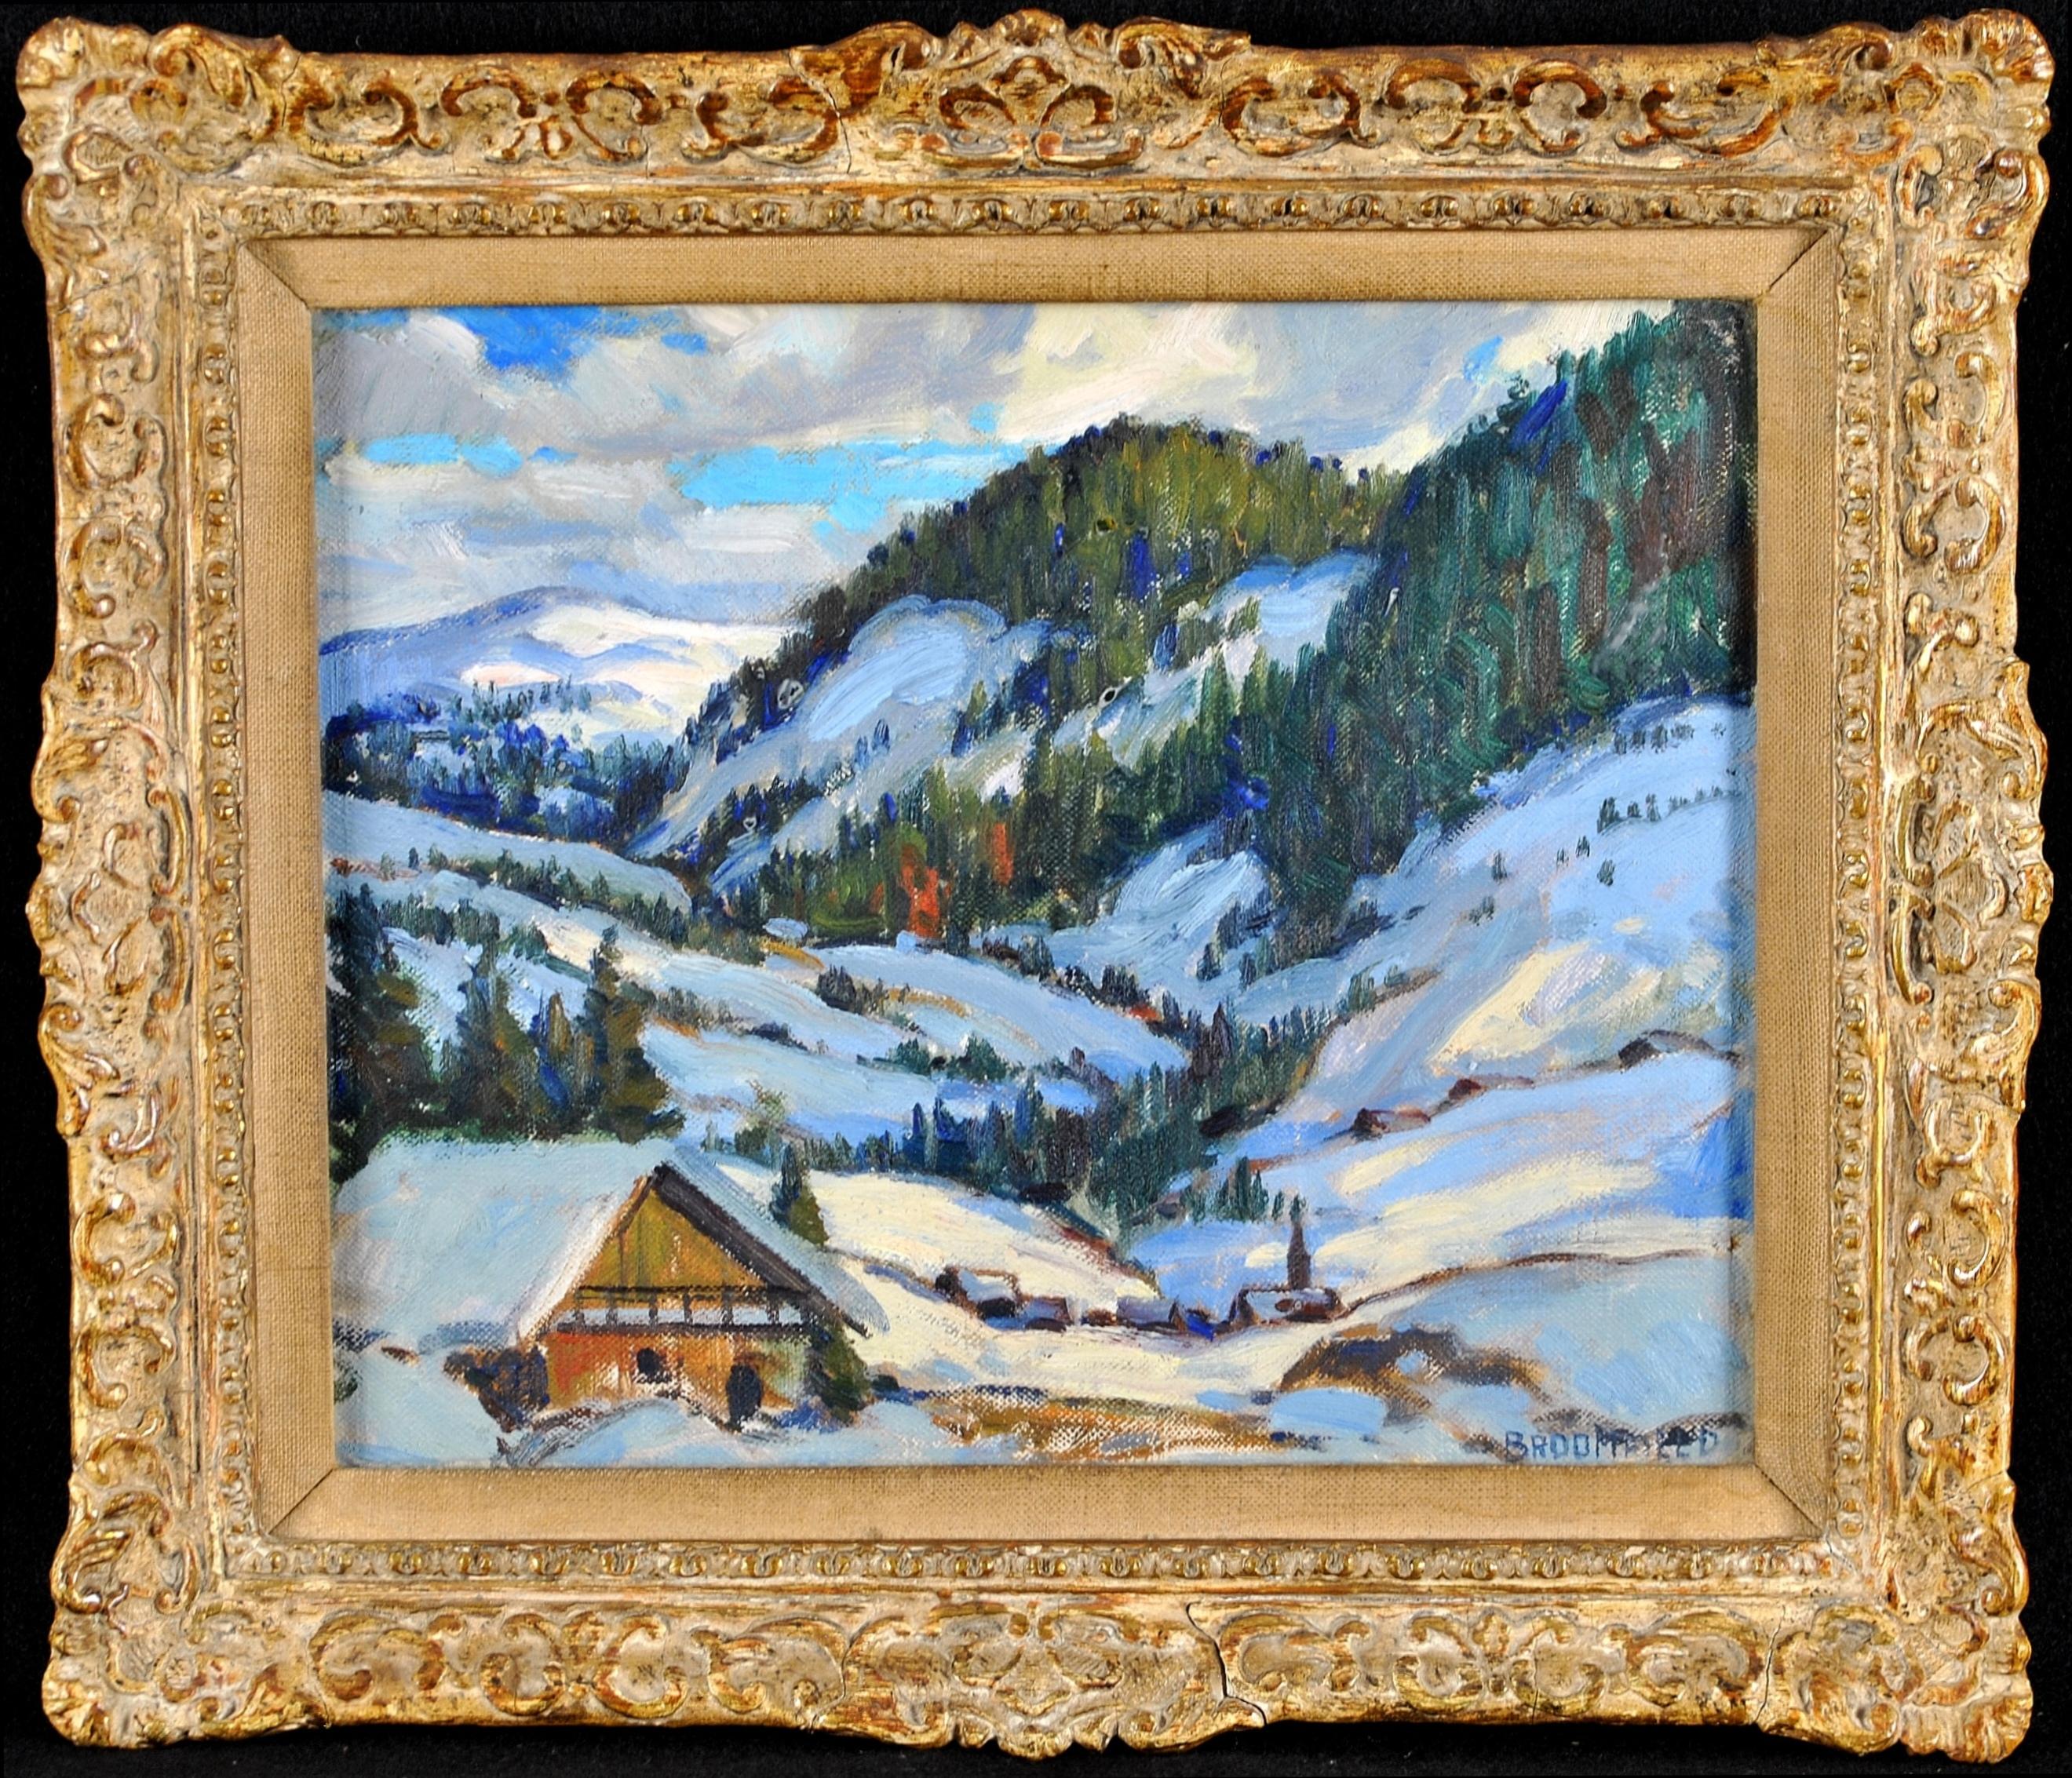 Adolphus George Broomfield Landscape Painting – Alpine Landschaft - Impressionistisches kanadisches Ölgemälde, Schnee-Winter-Gemälde des 20. Jahrhunderts